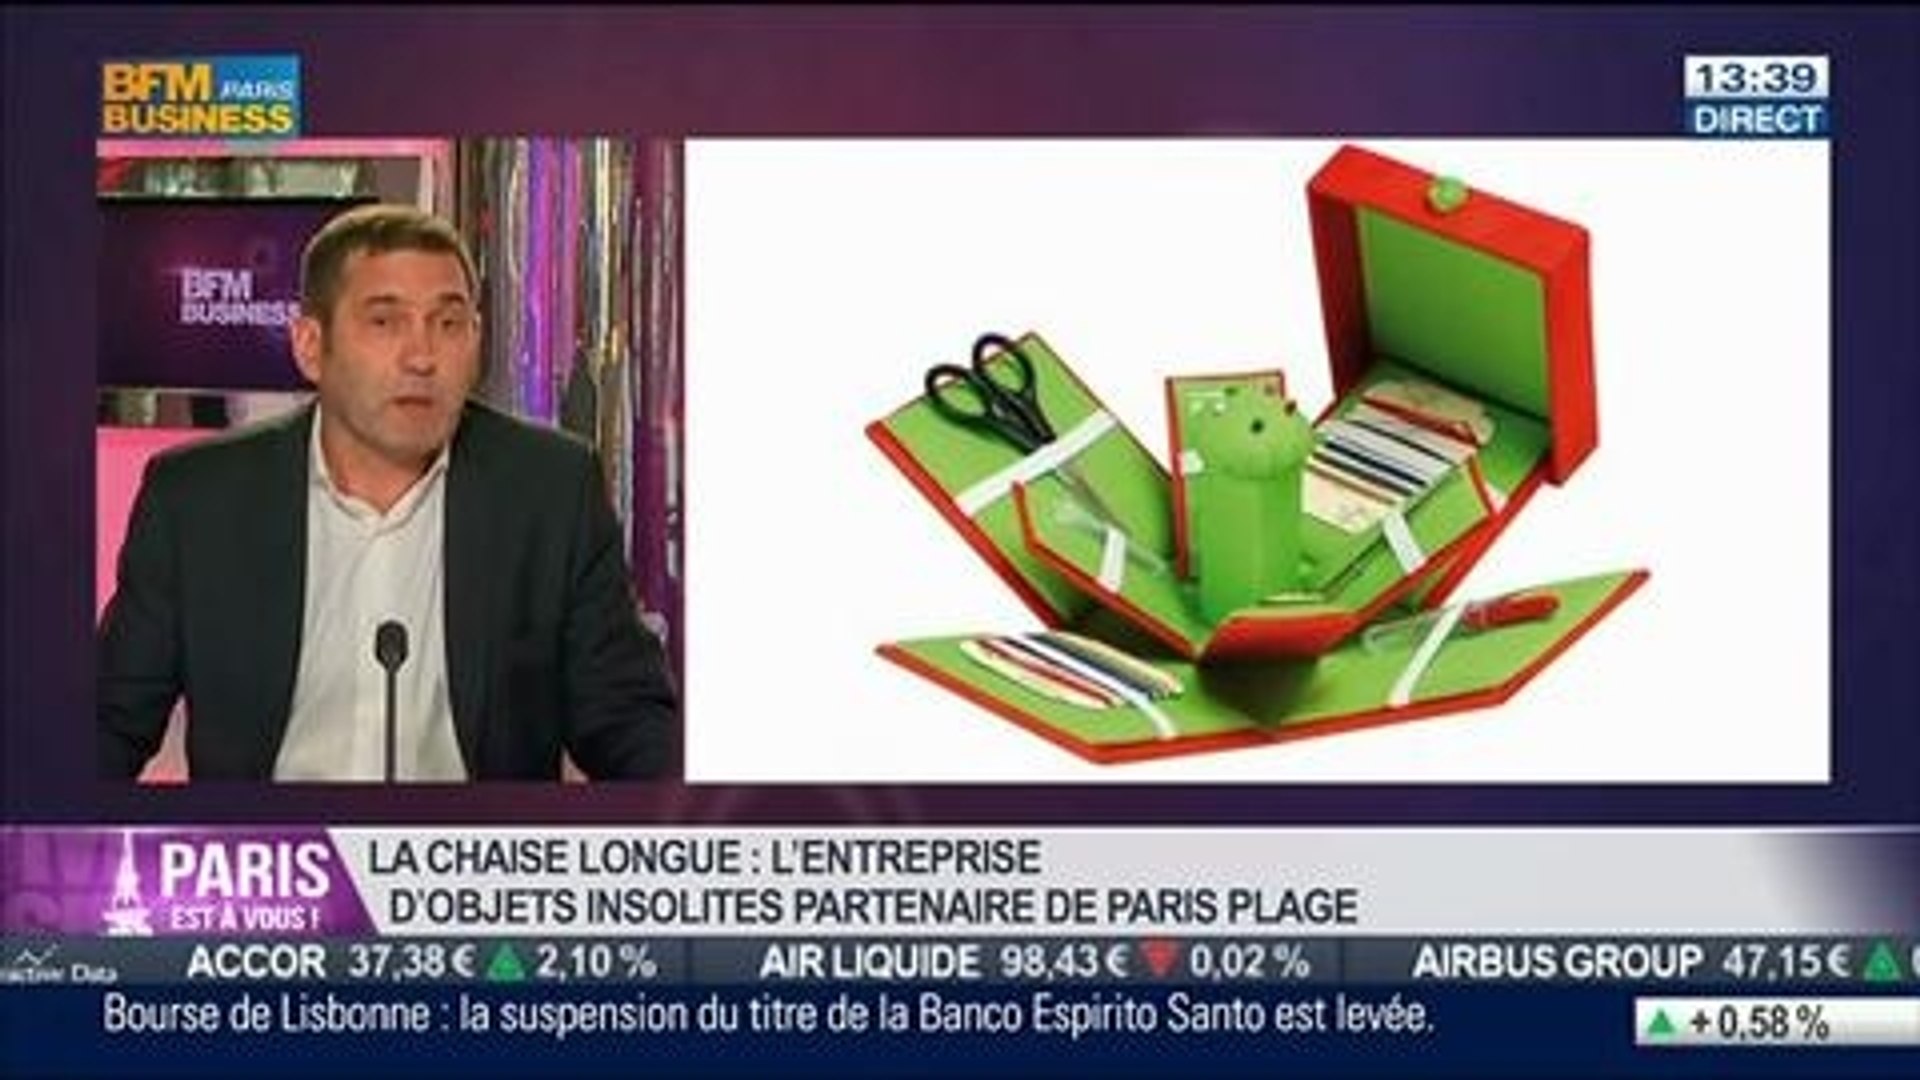 Made in Paris: Jean-Marie Pomares, La Chaise Longue, dans Paris est à vous  – 11/07 - Vidéo Dailymotion